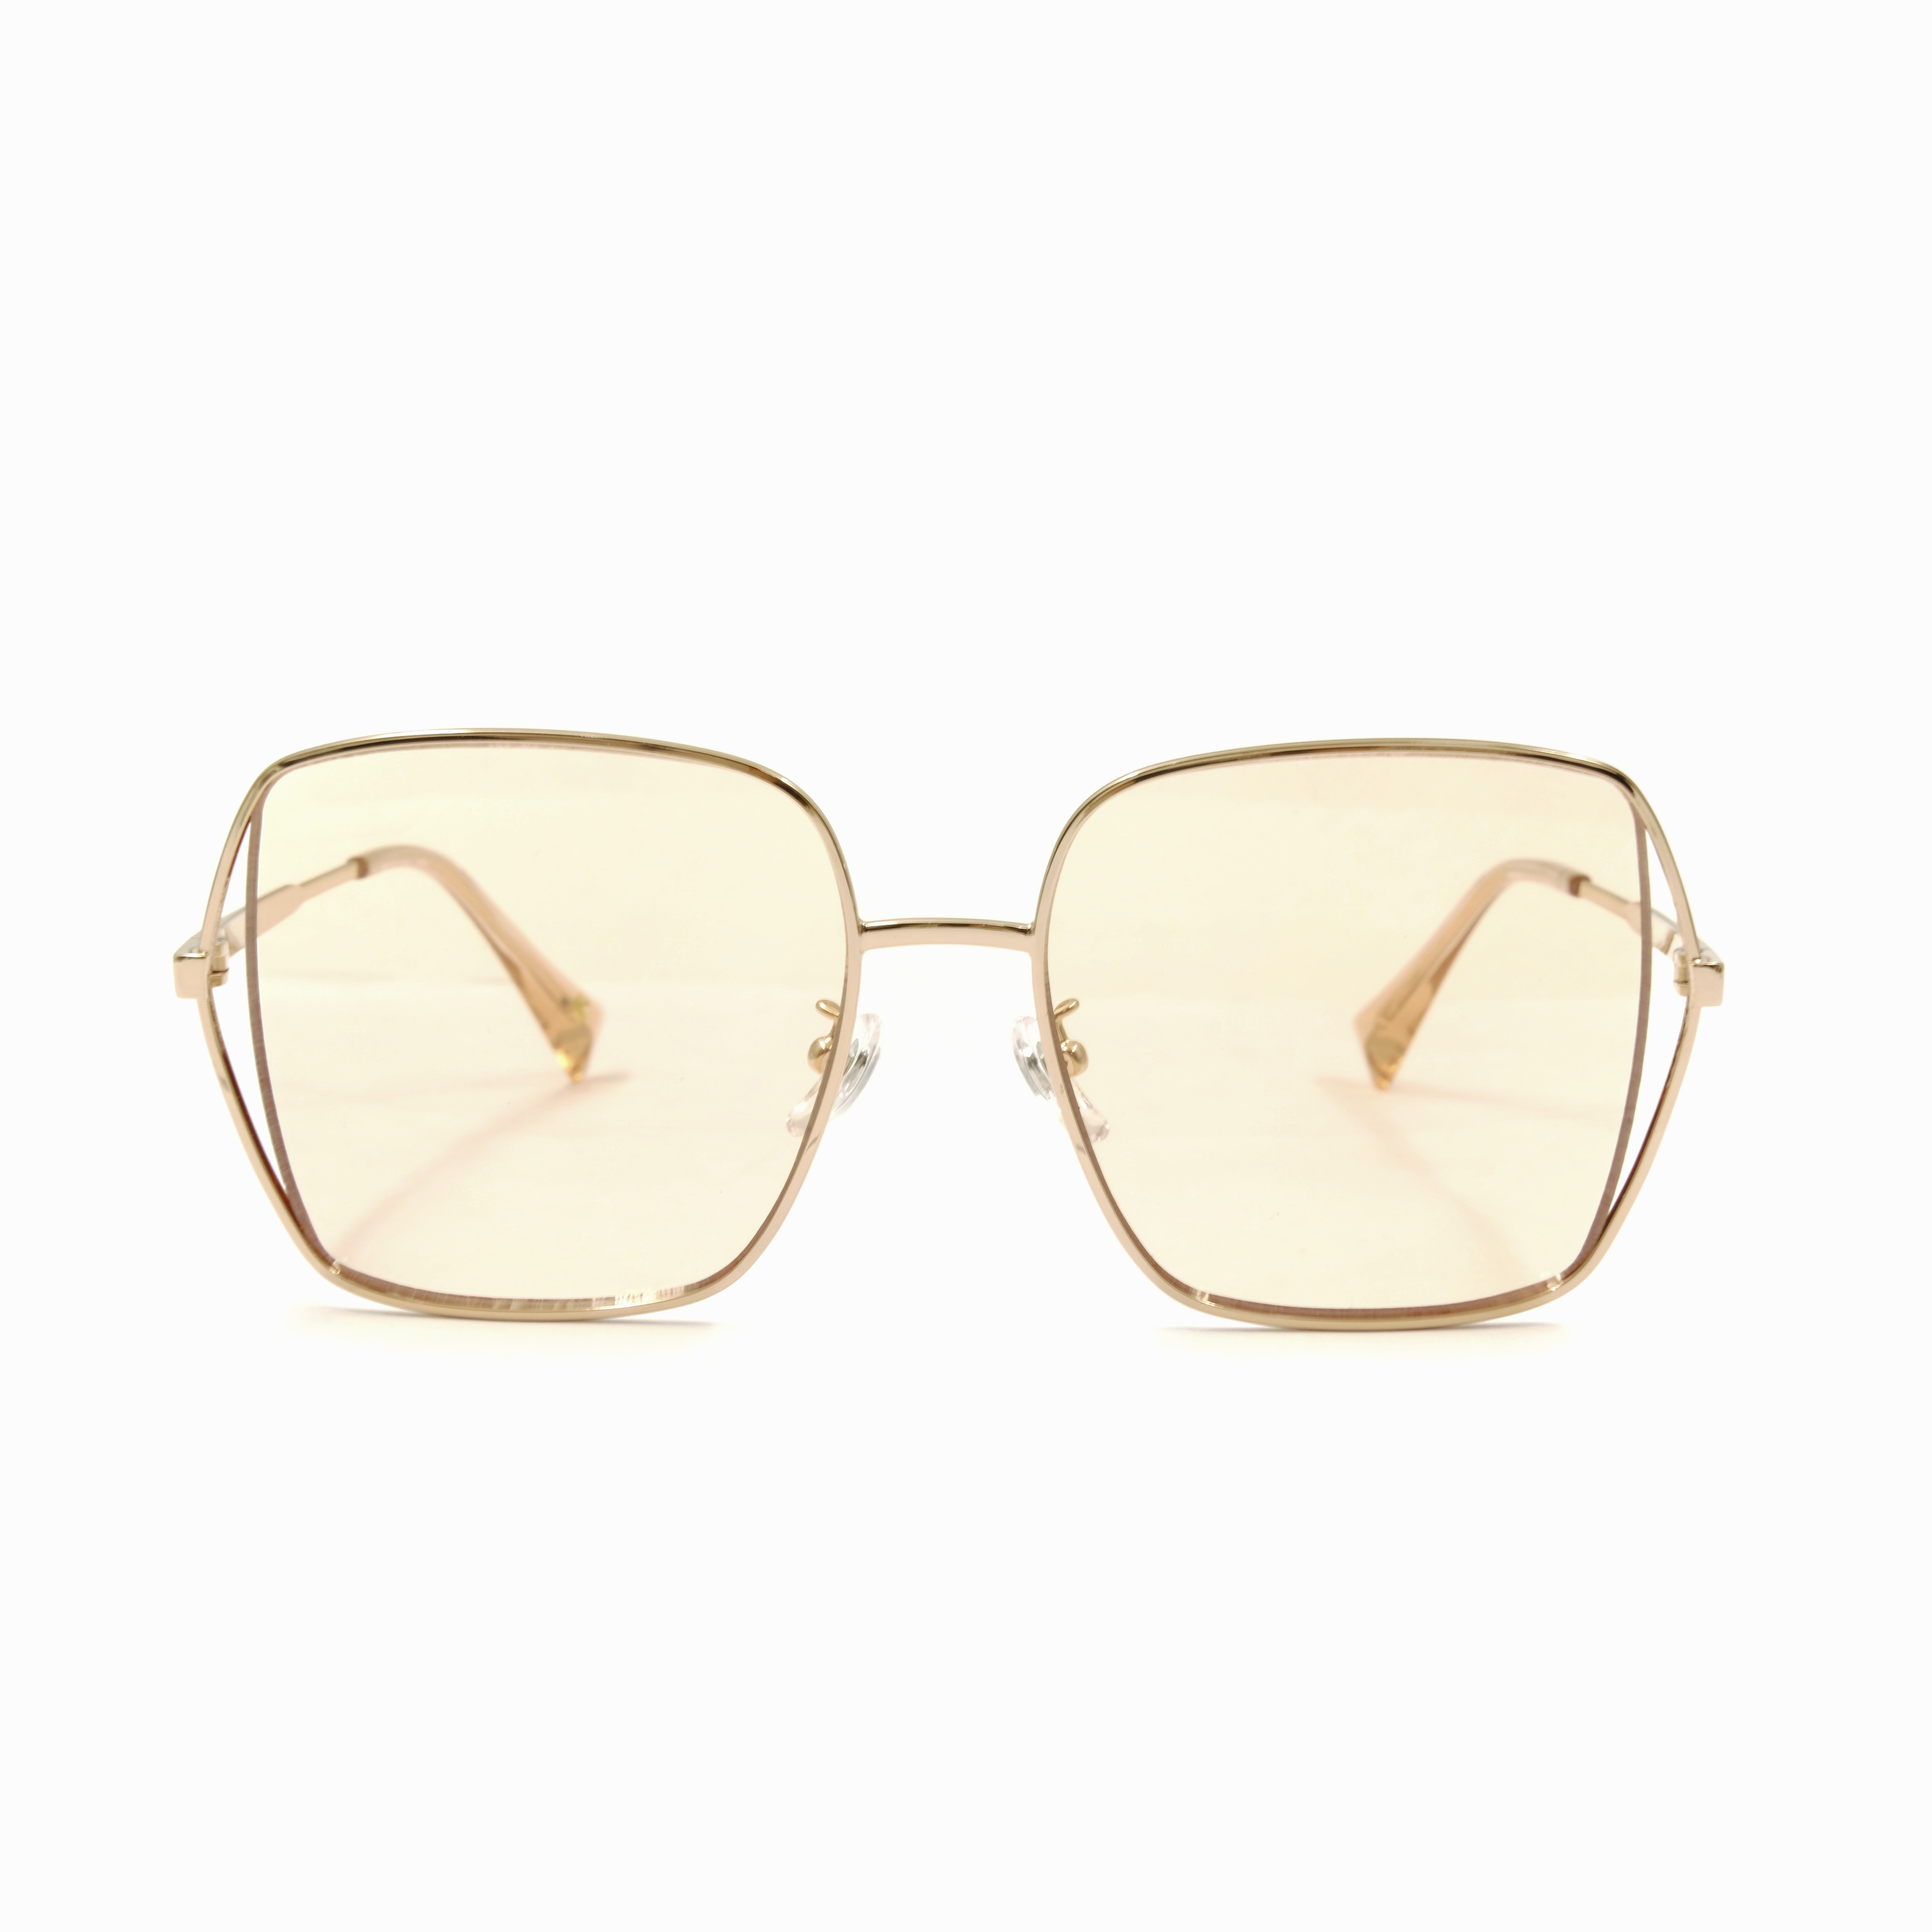 Newest Fashion Gold Sunglasses Oversize Glass Bespoke Glasses Factory China